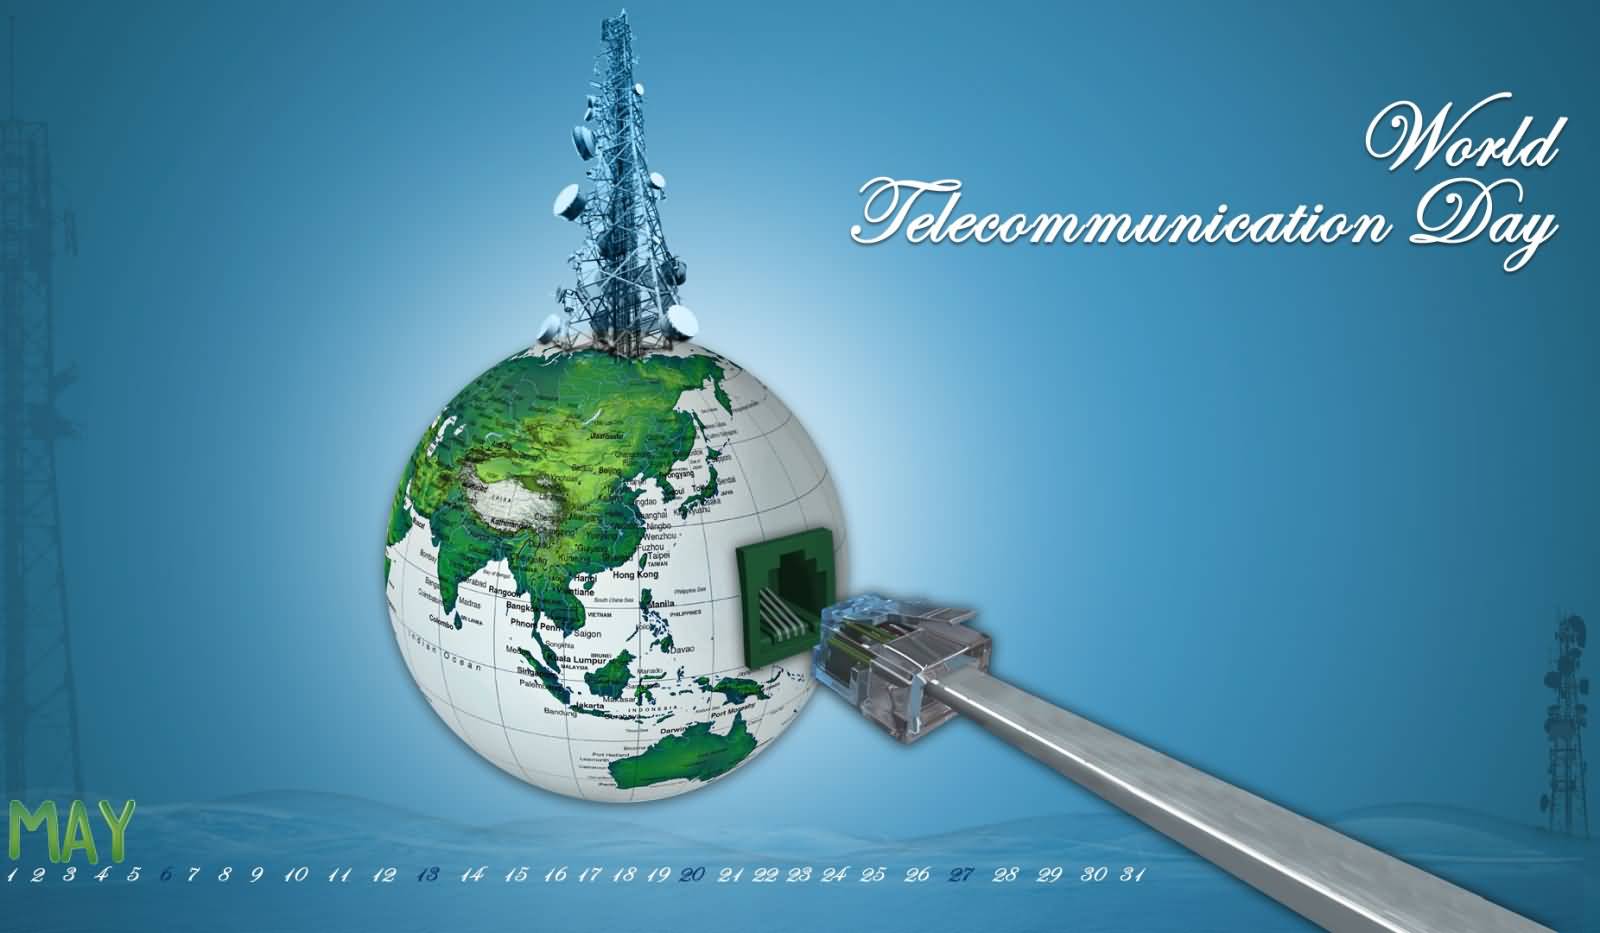 World Telecommunication Day 2017